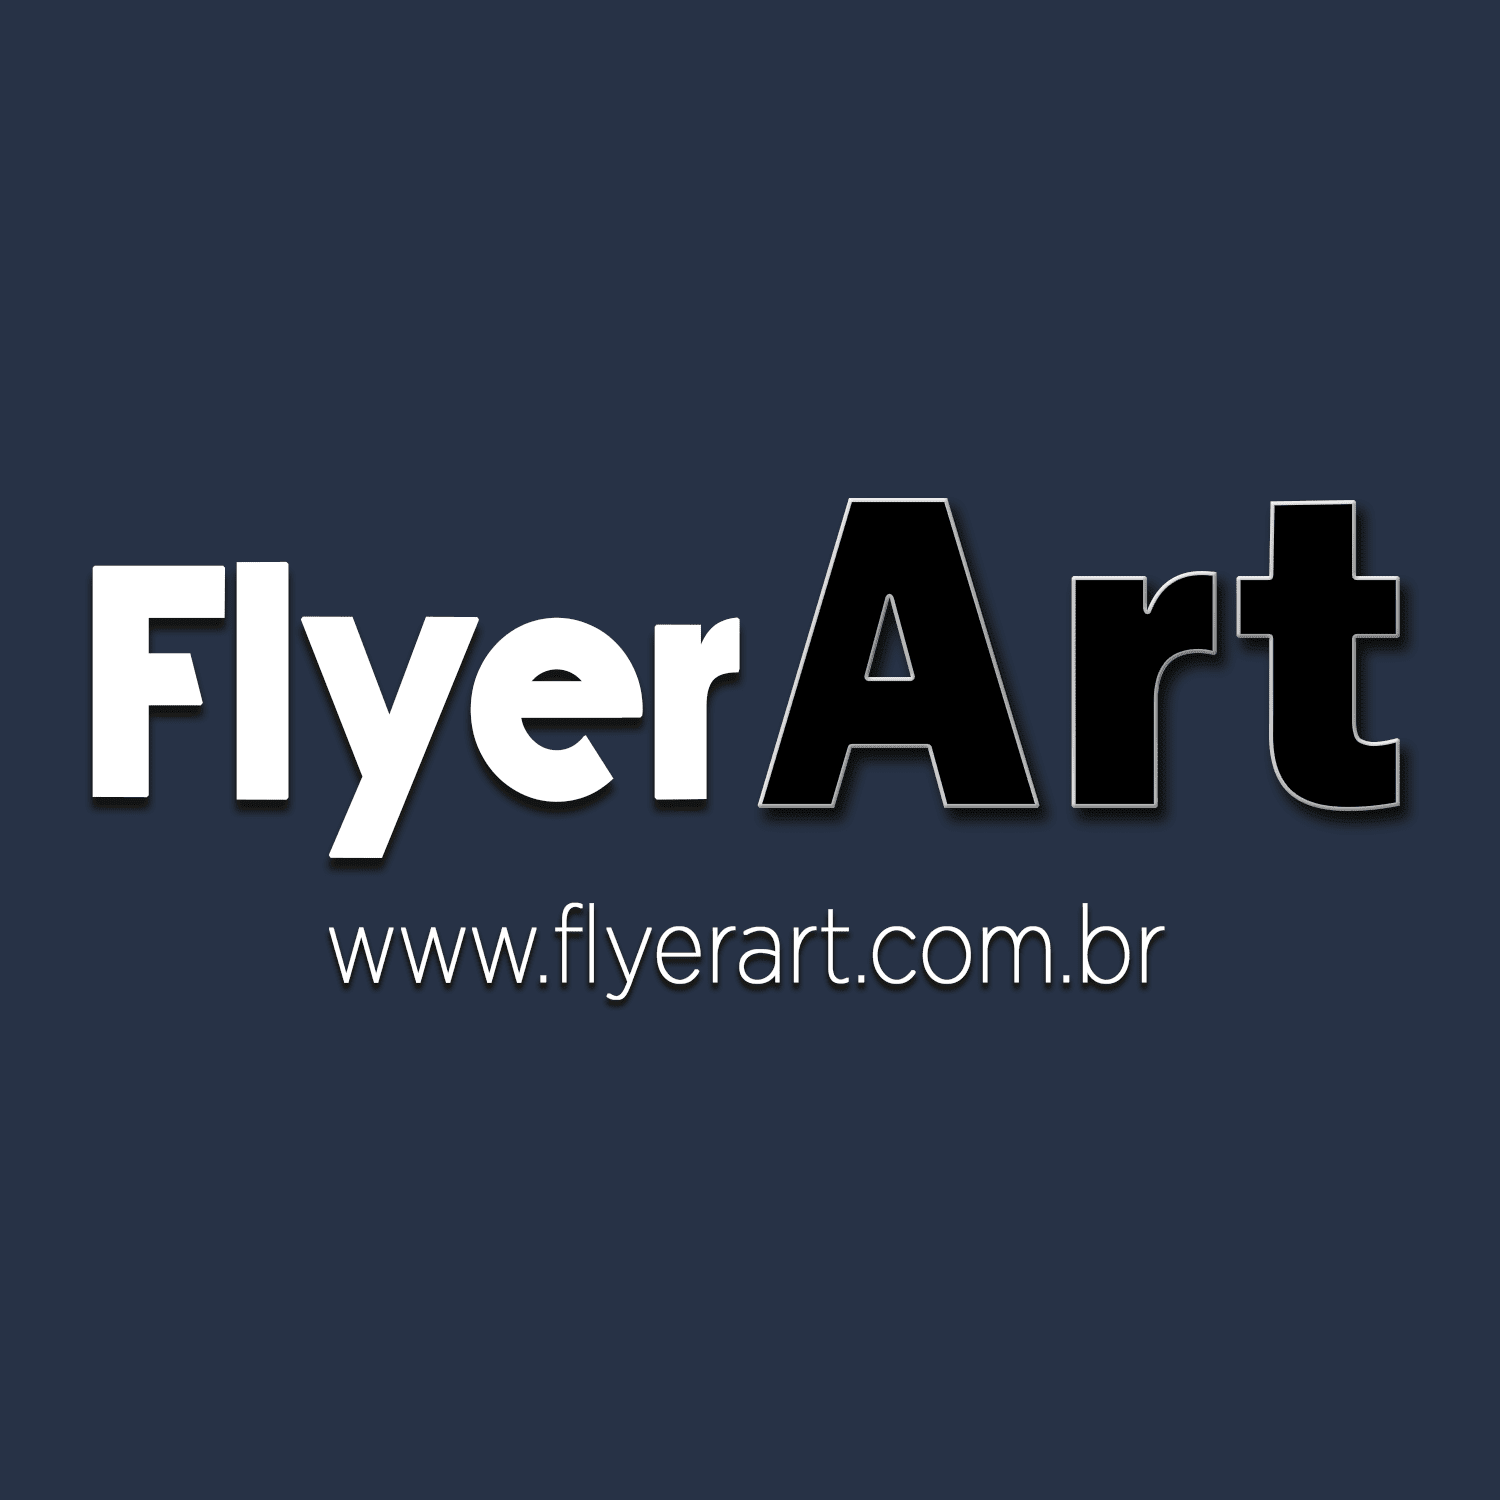 FlyerArt